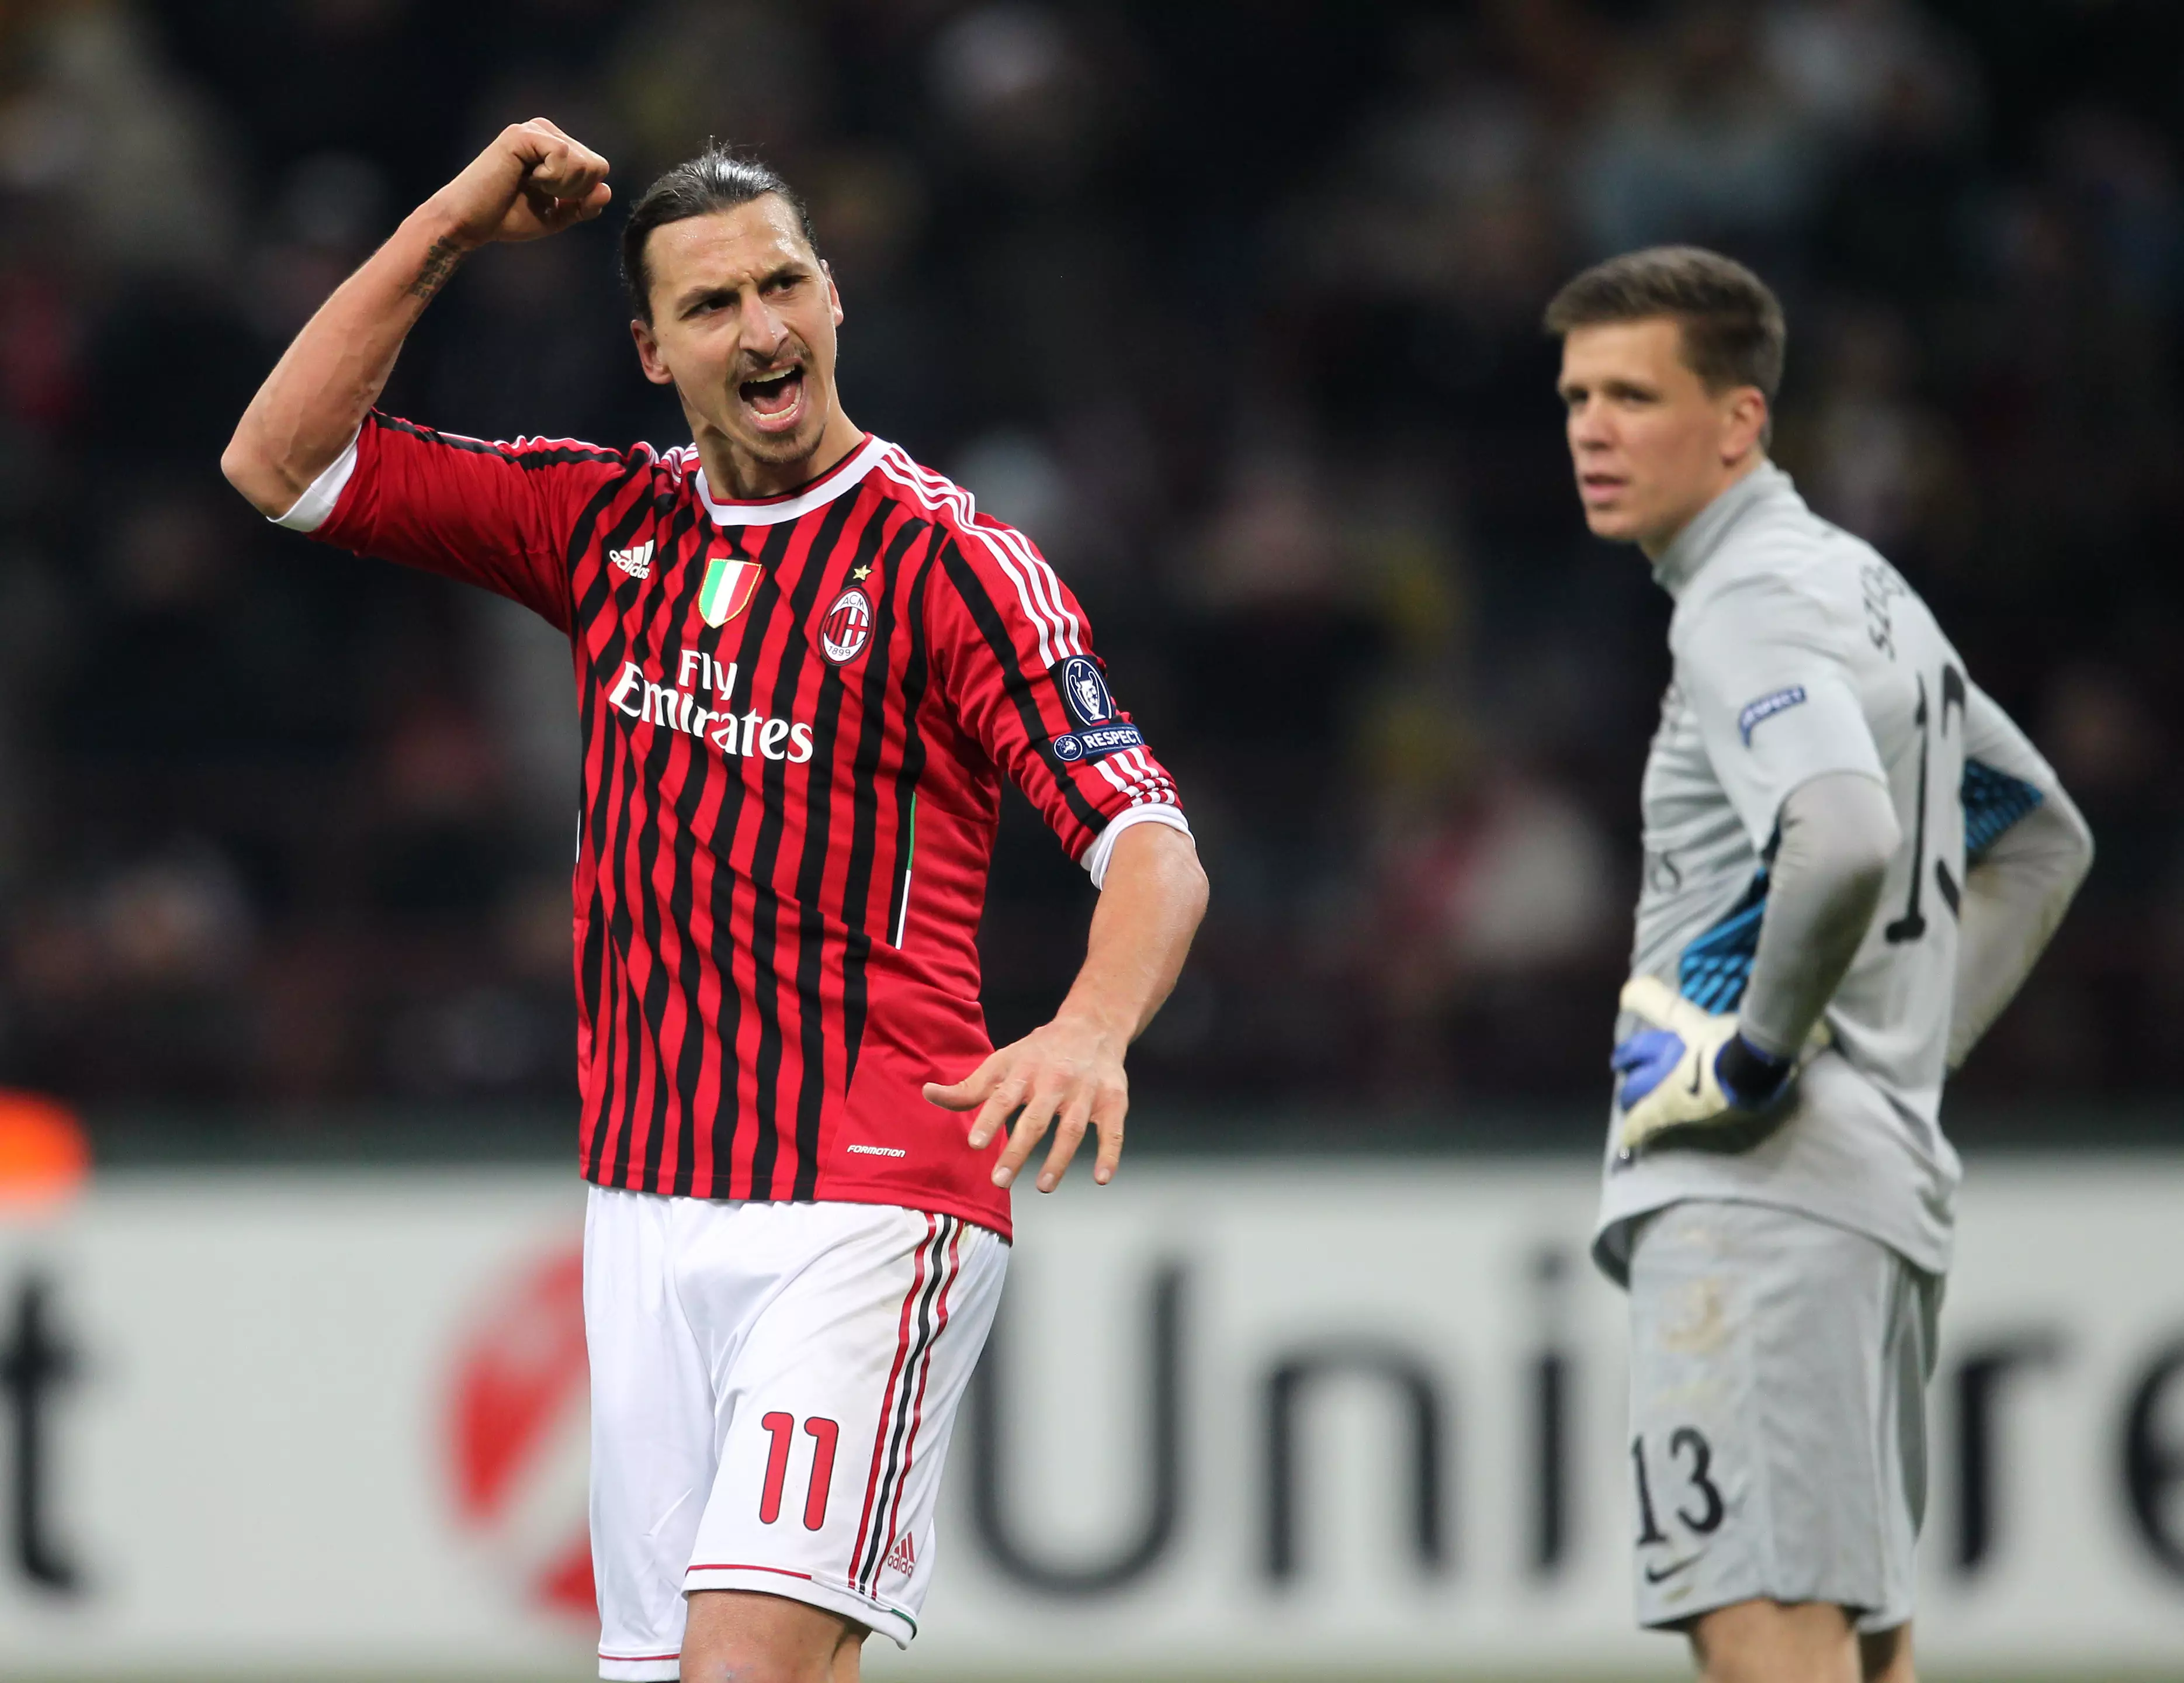 Ibrahimovic celebrates scoring a goal for AC Milan. Image: PA